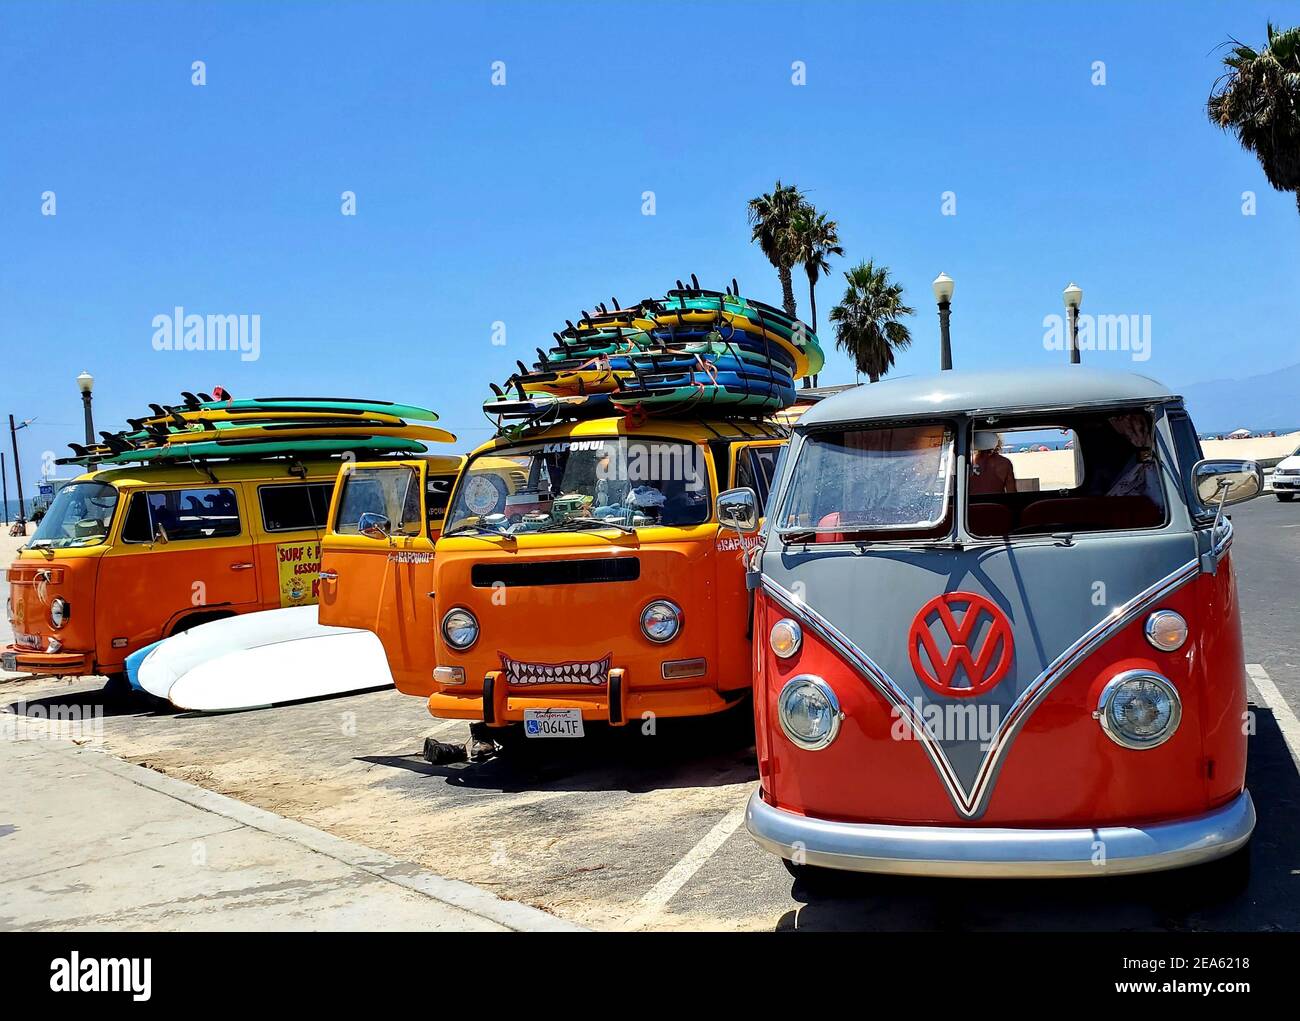 hoher beach -Bildmaterial bus Auflösung in und – Vw -Fotos Alamy surf